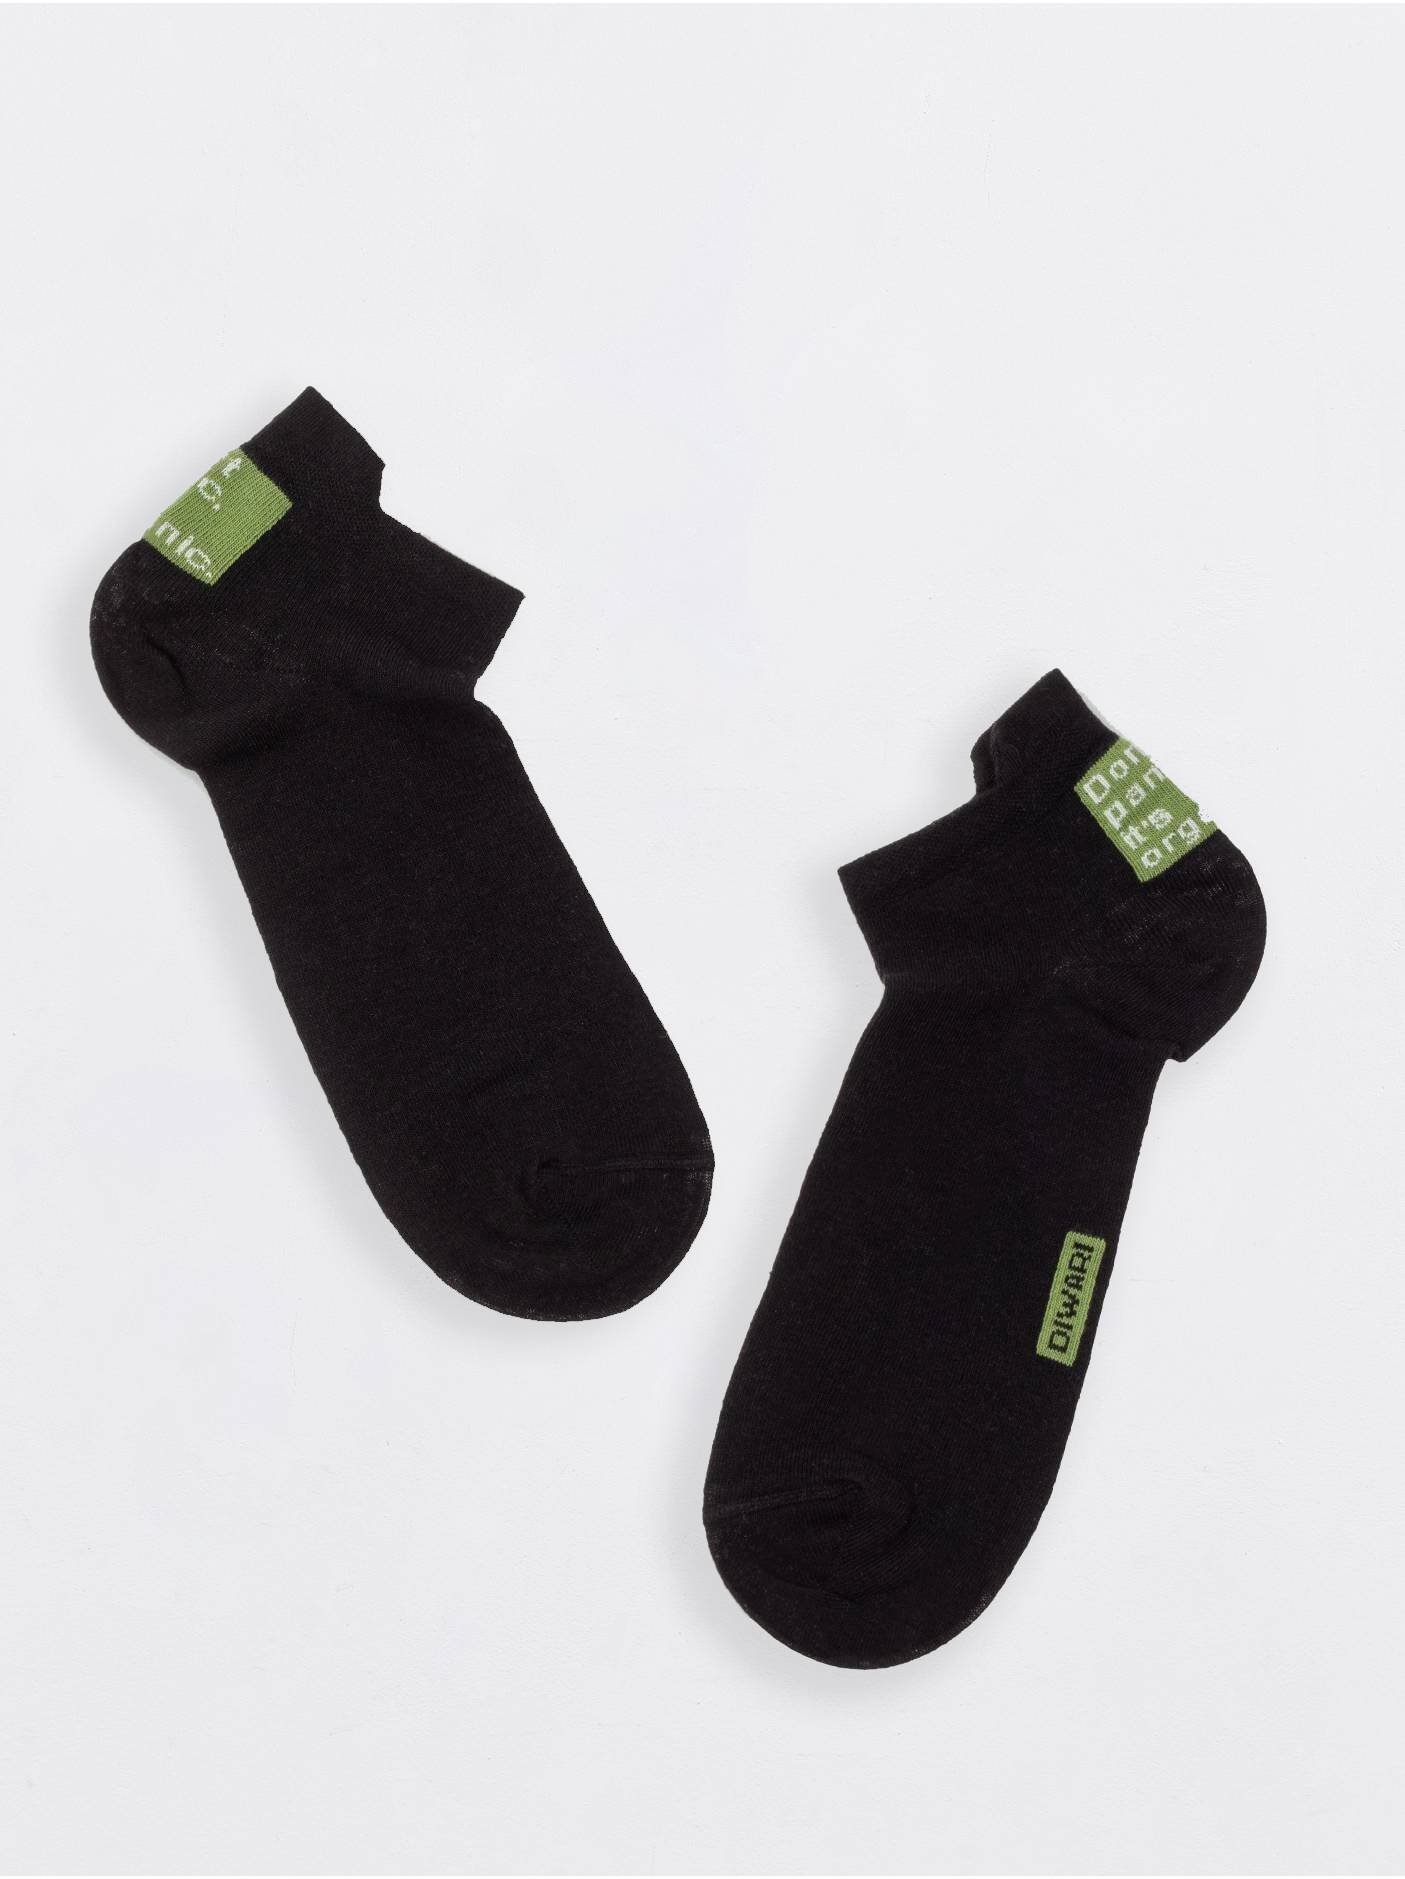 Короткие носки с хлопком и коноплей Conte ⭐️, цвет черный, размер 40-41